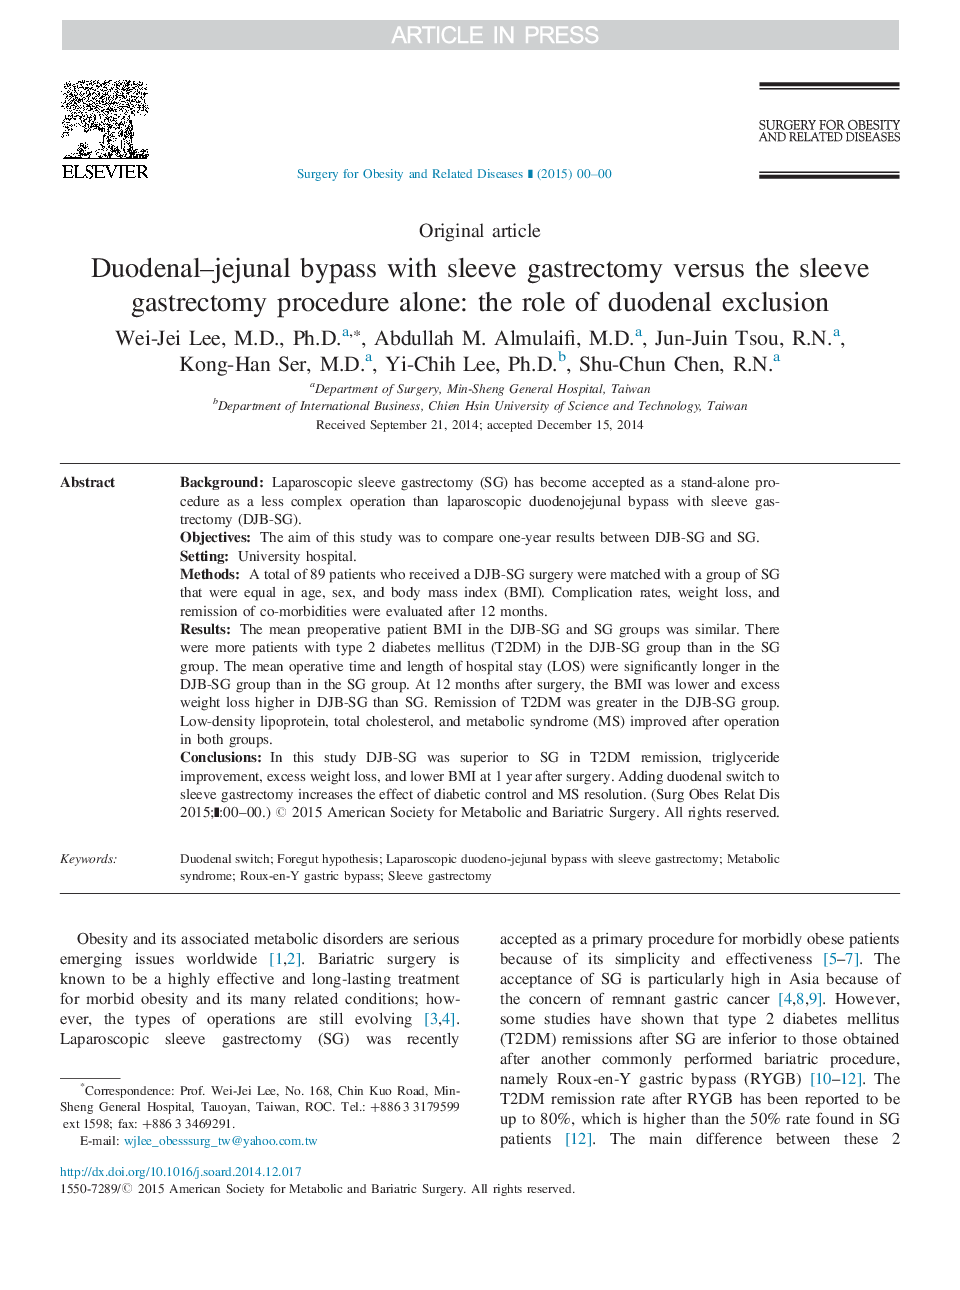 بایوئال دوئودنال - ژیونال با استفاده از گاسترکتومی آستین در مقابل روش گاسترکتومی آستین به تنهایی: نقش خروج دوازدهه 